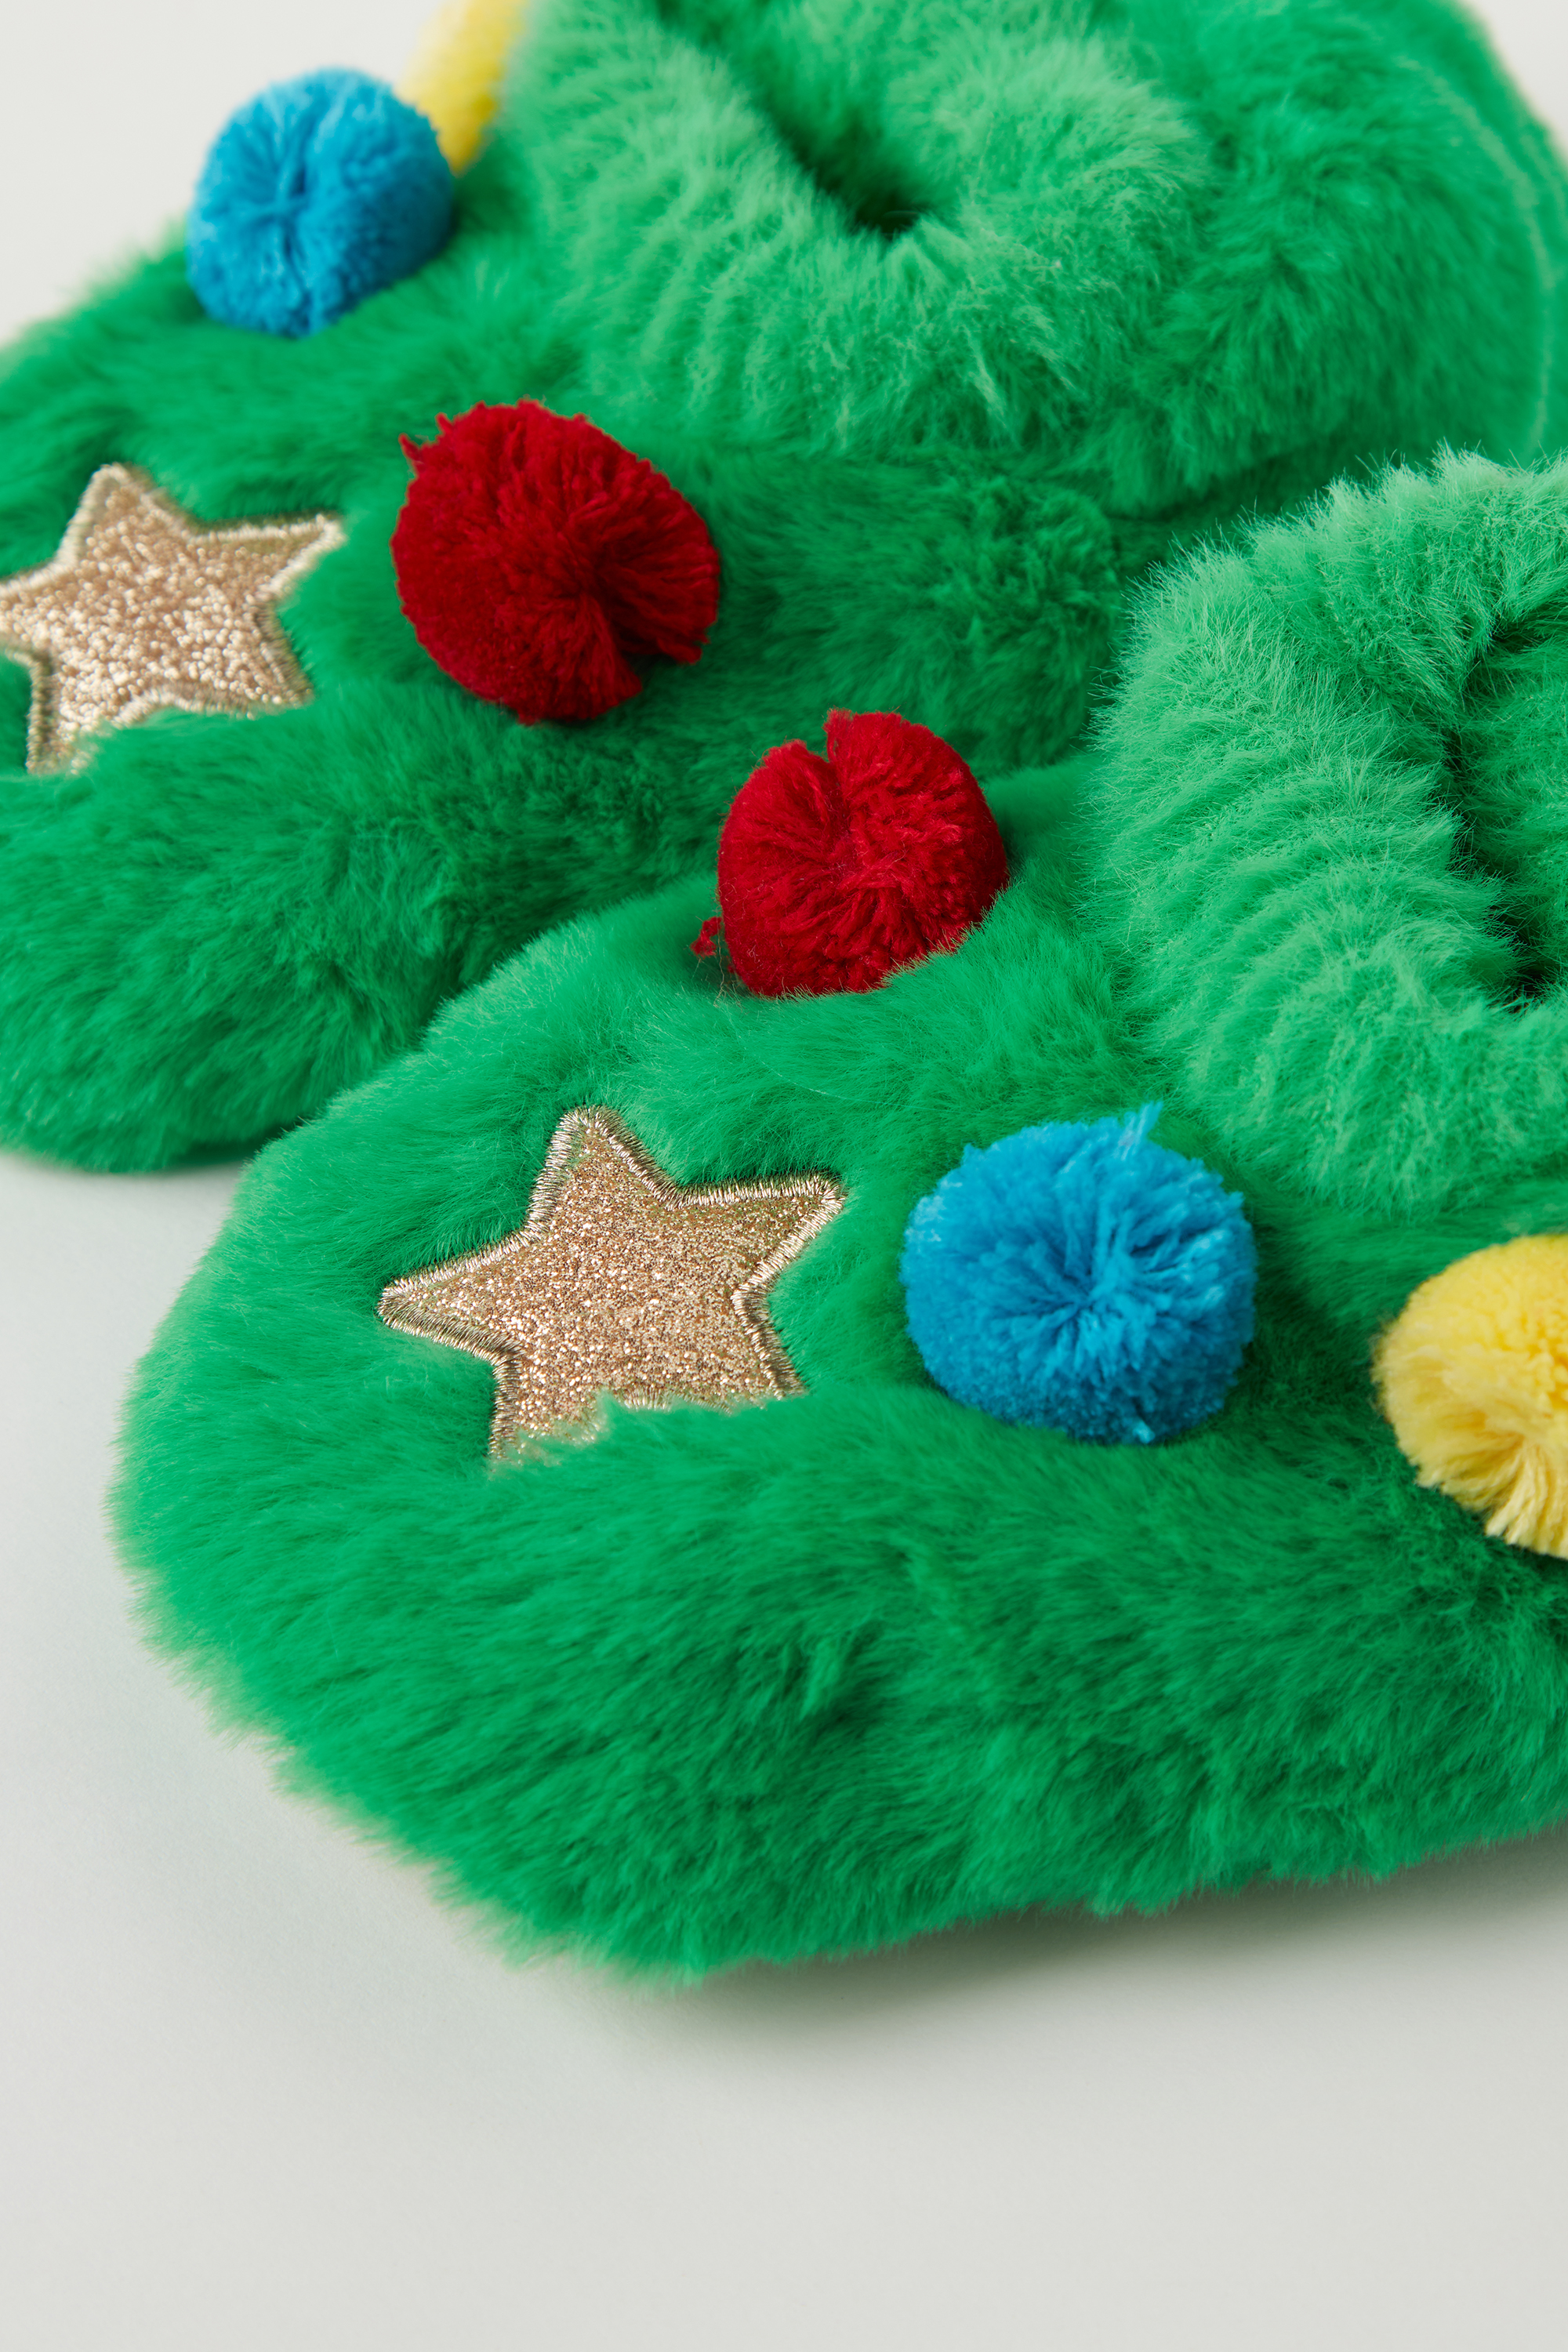 Pantuflas Estilo Zapatillas de Árbol de Navidad Unisex para Niños